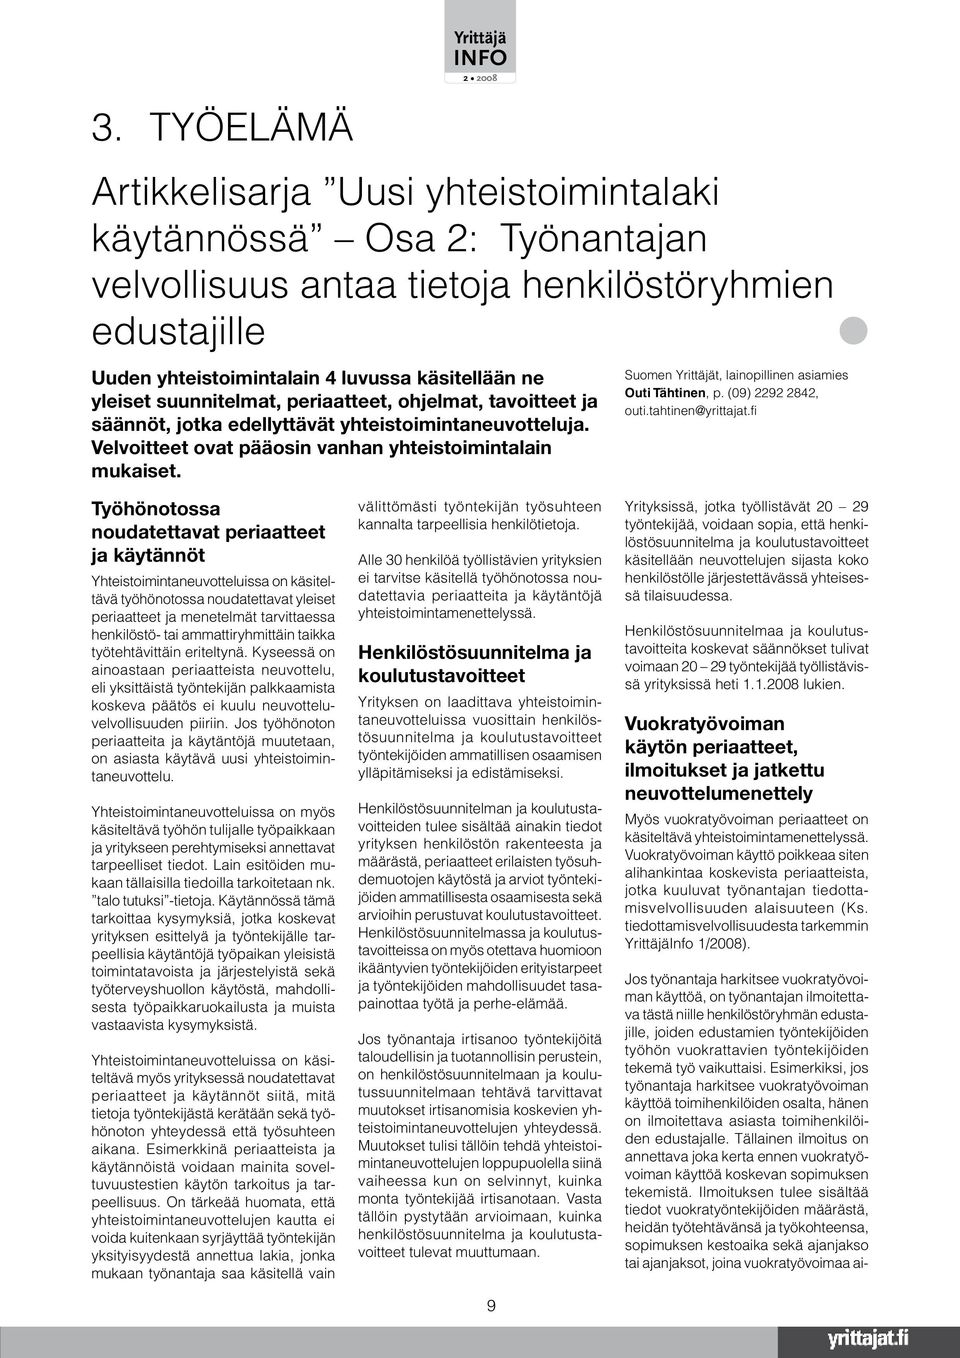 Suomen Yrittäjät, lainopillinen asiamies Outi Tähtinen, p. (09) 2292 2842, outi.tahtinen@yrittajat.